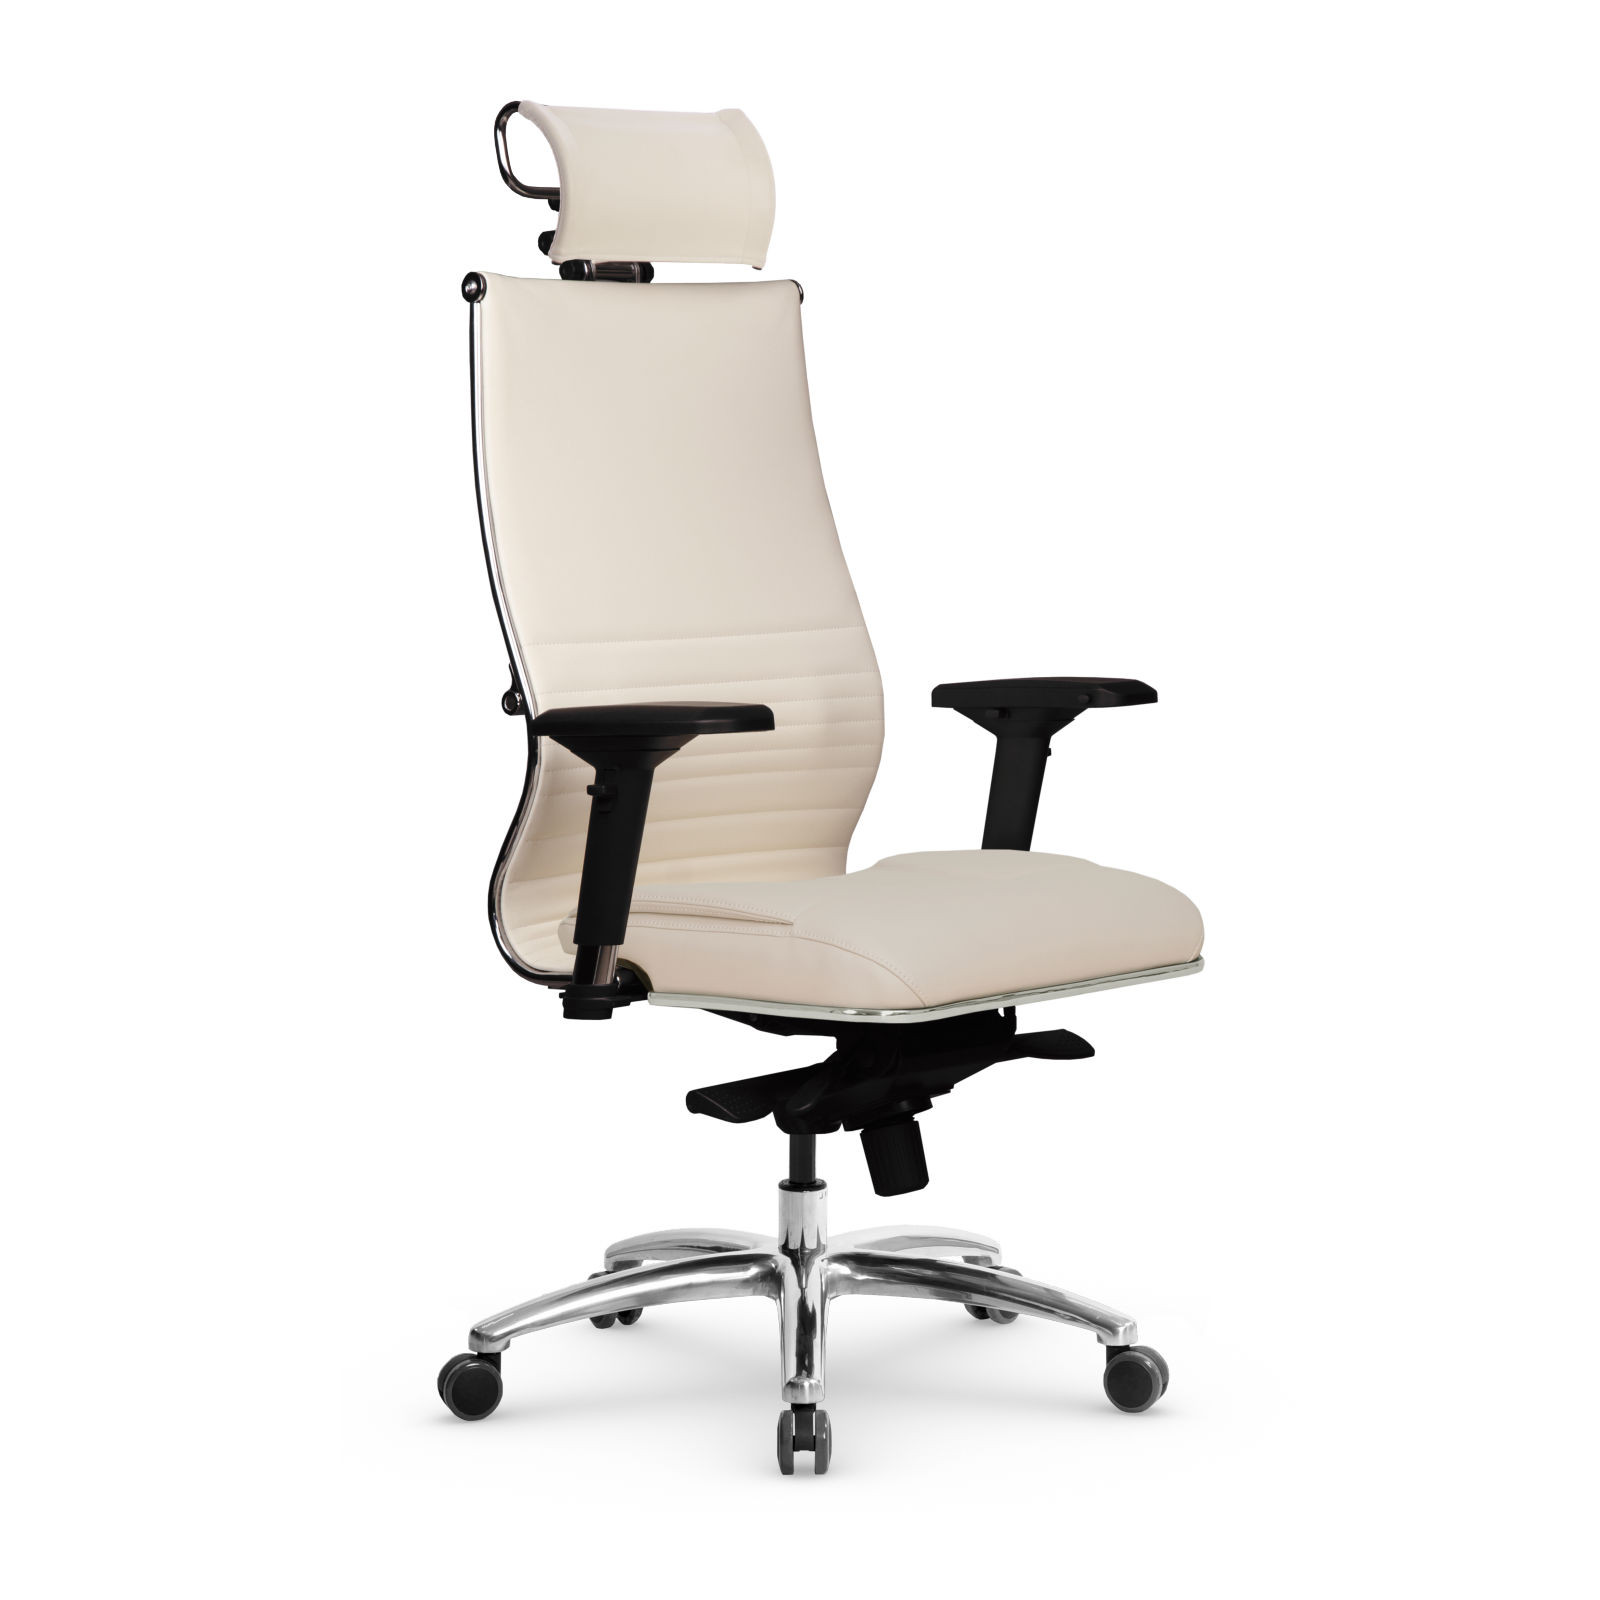 Кресло Samurai KL-3.05 MPES, офисное кресло, компьютерное кресло, кресло самурай, кресло для дома и офиса, кресто Metta (Молочный)